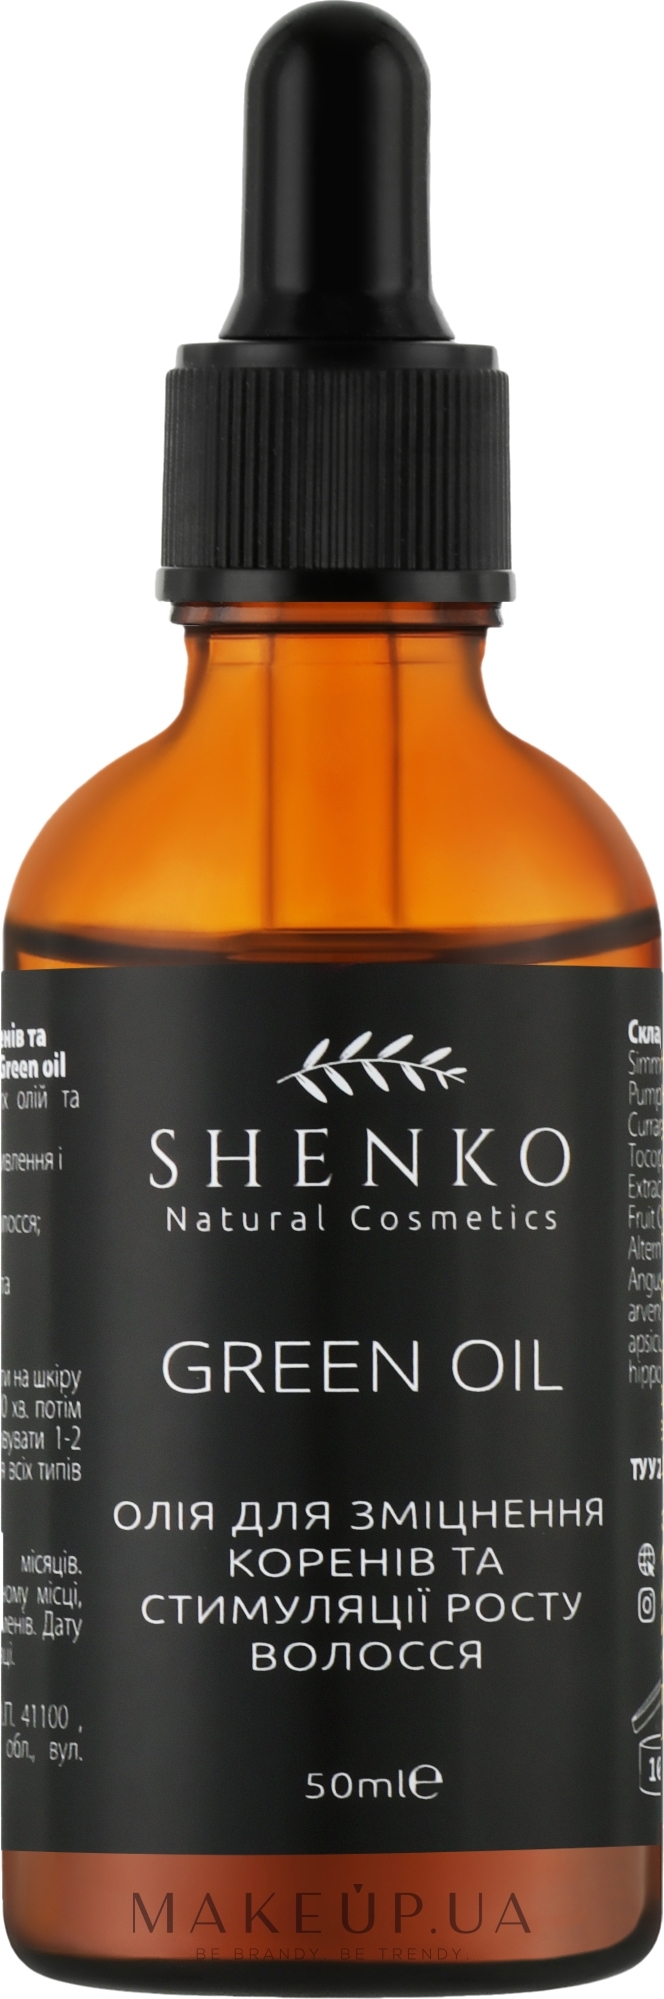 Олія для зміцнення коренів та стимуляції росту волосся - Shenko Green Oil — фото 50ml